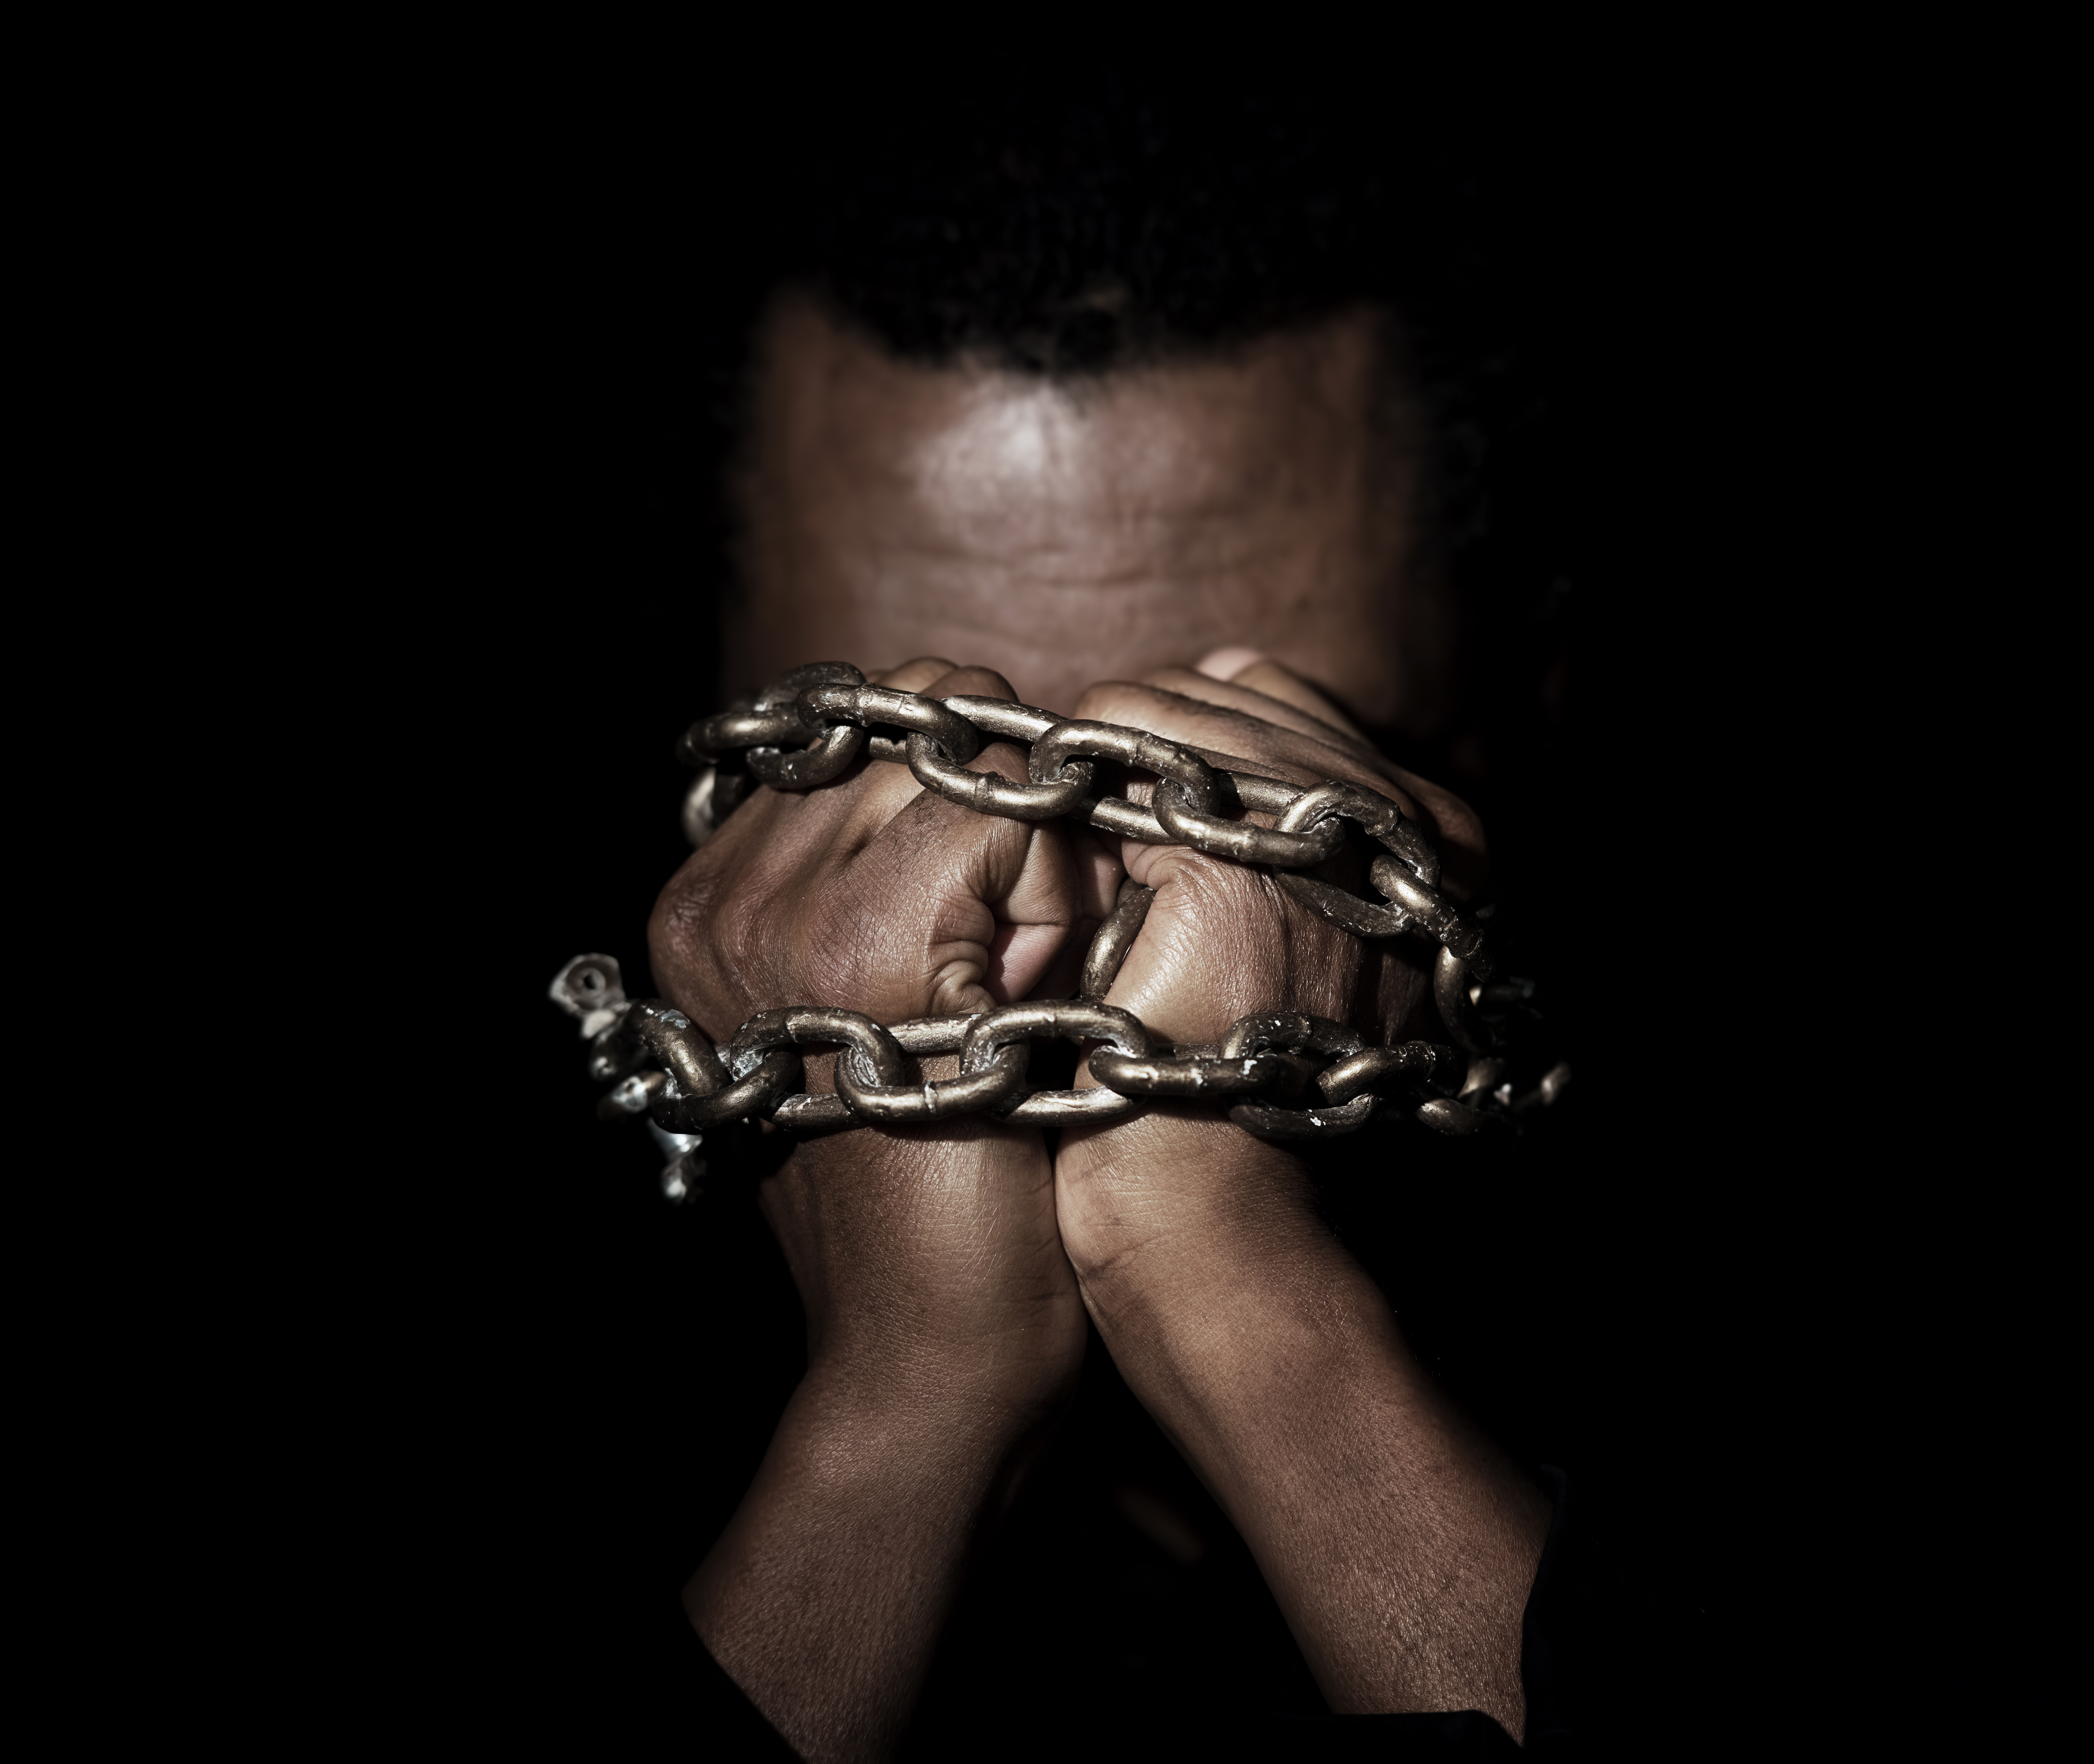 Țara care vrea 7 miliarde de lire sterline de la Marea Britanie ca daune pentru traficul de sclavi